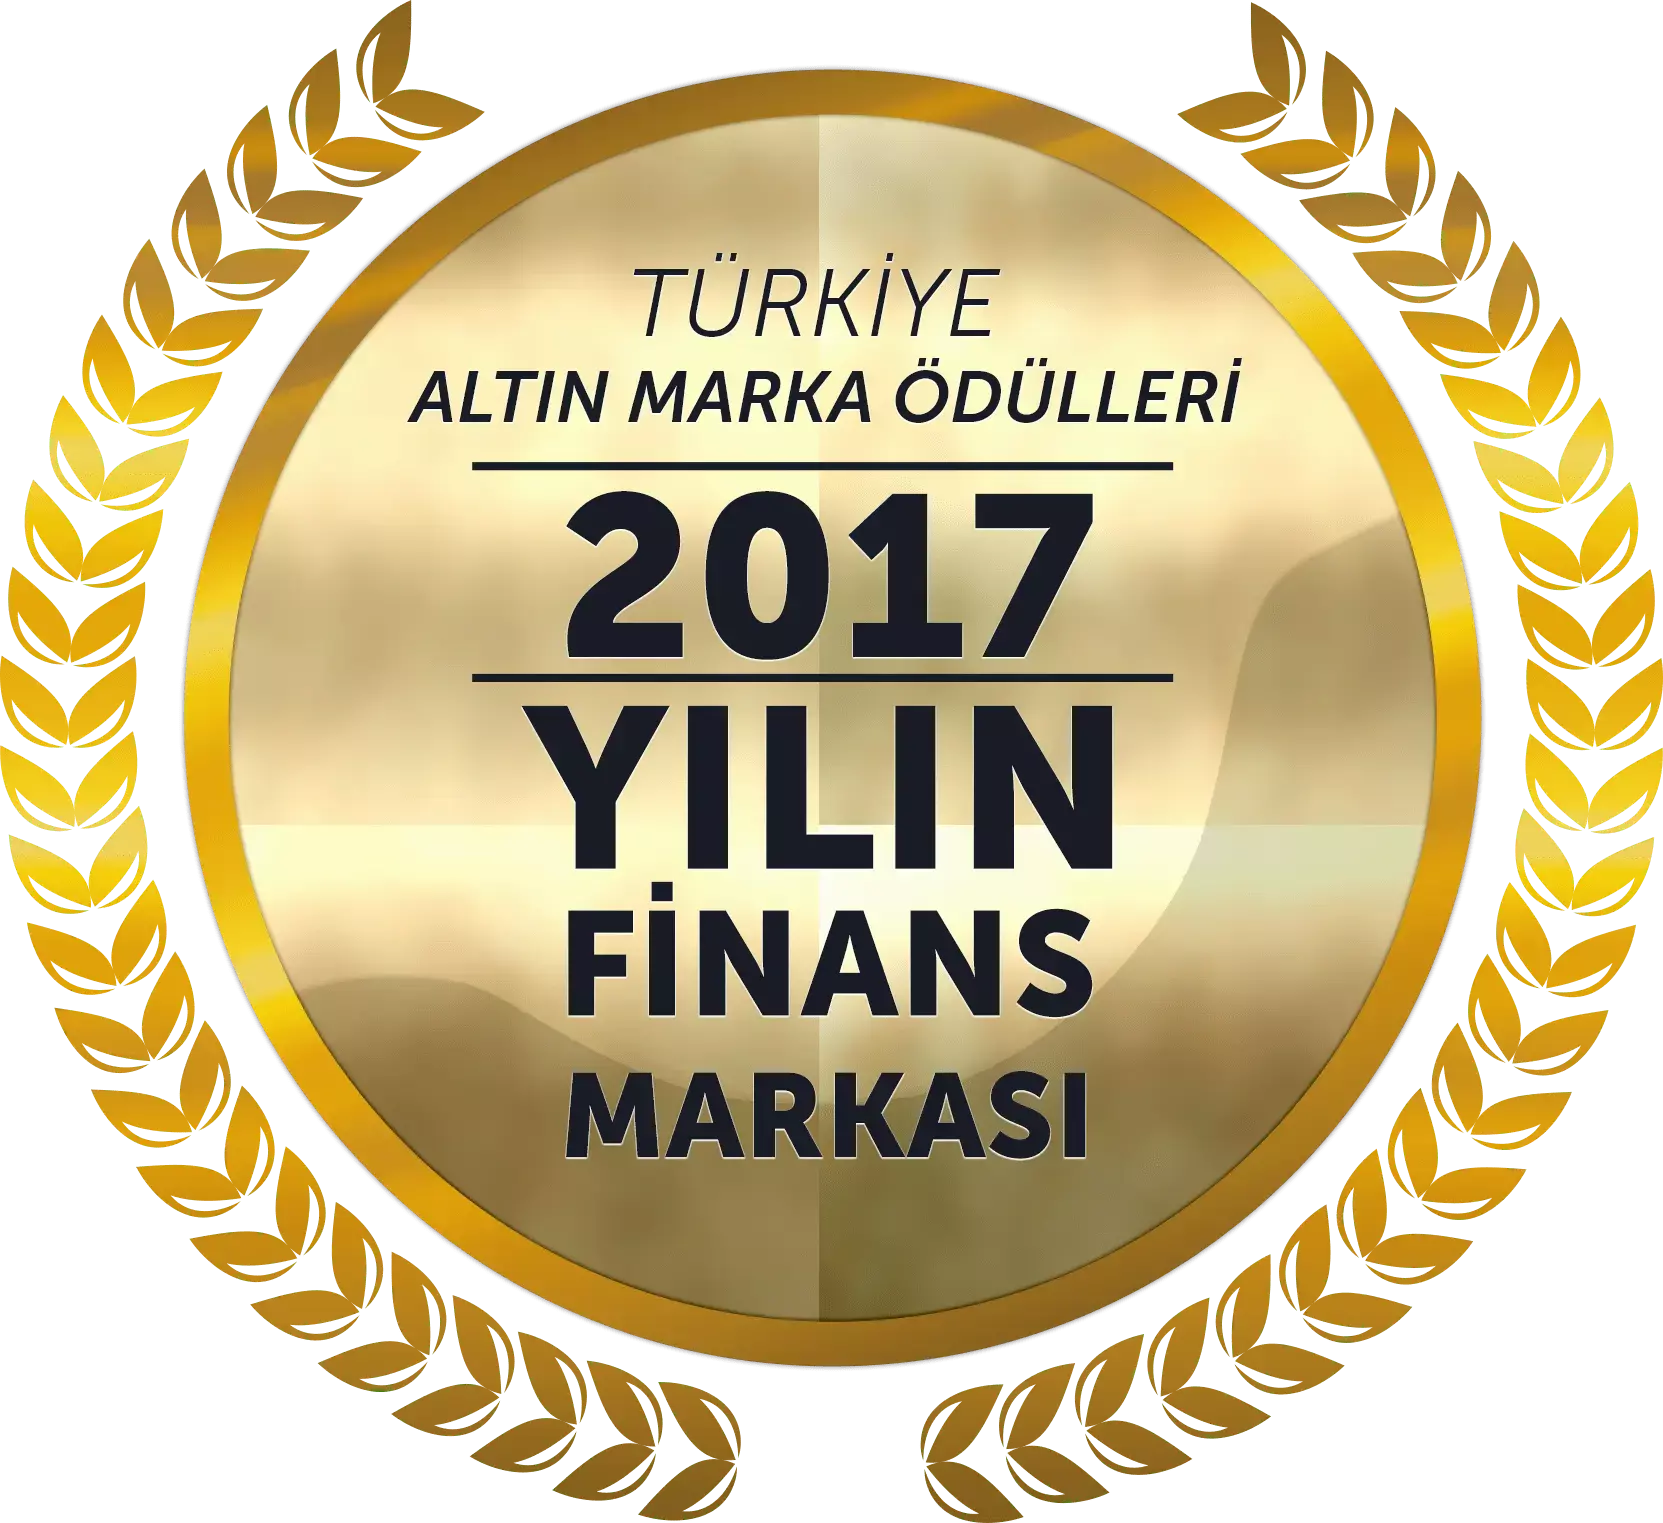 Yılın Finans Markası 2017 Türkiye Altın Marka Ödülleri